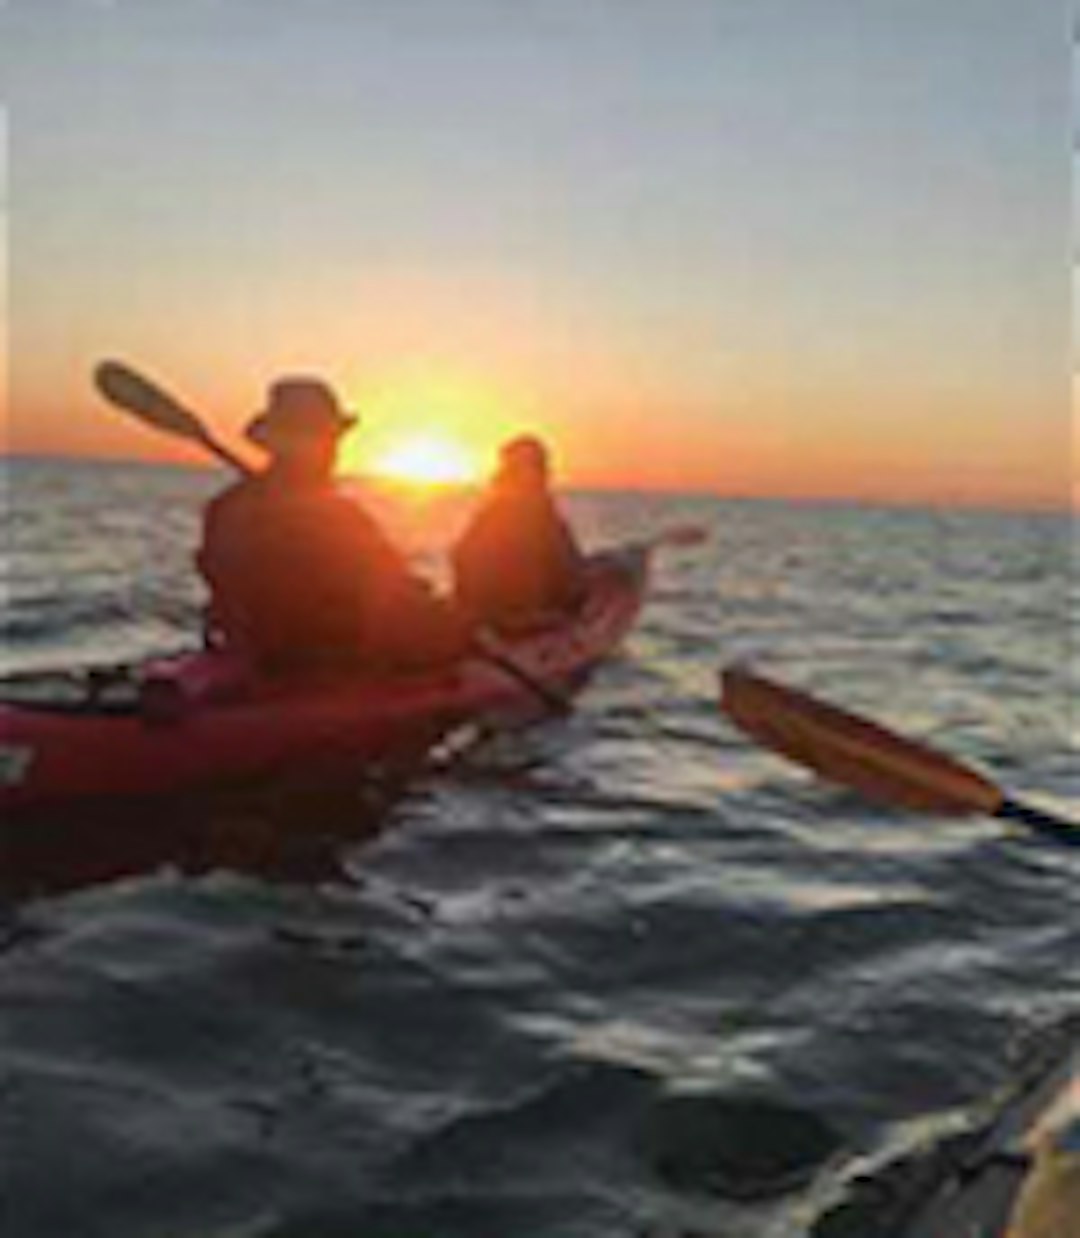 Two individuals kayaking at sunset.